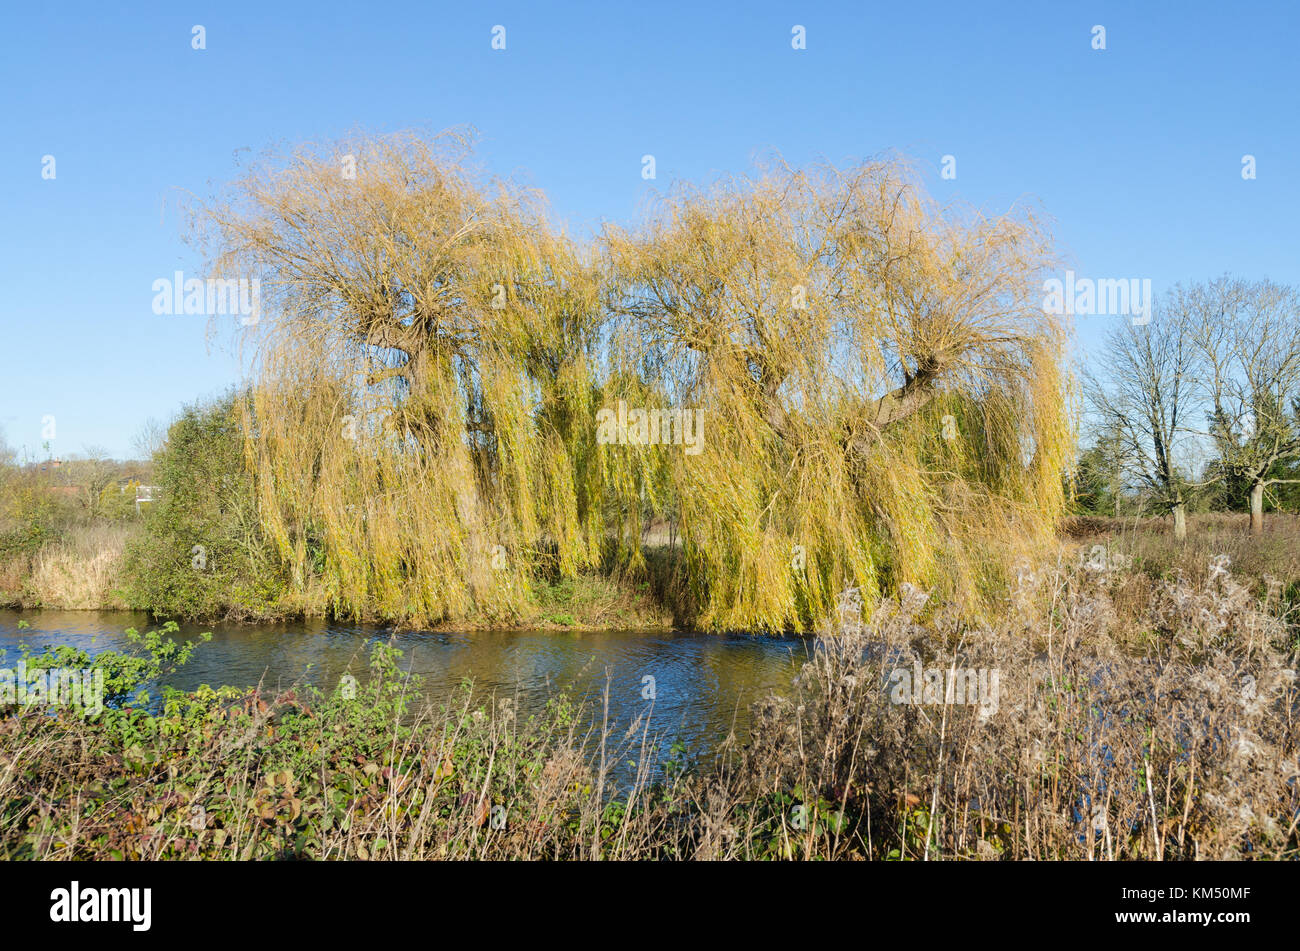 Saule pleureur Salix babylonica ou d'arbres sur les rives de la rivière Avon près de Stratford-upon-Avon dans le Warwickshire en hiver Banque D'Images